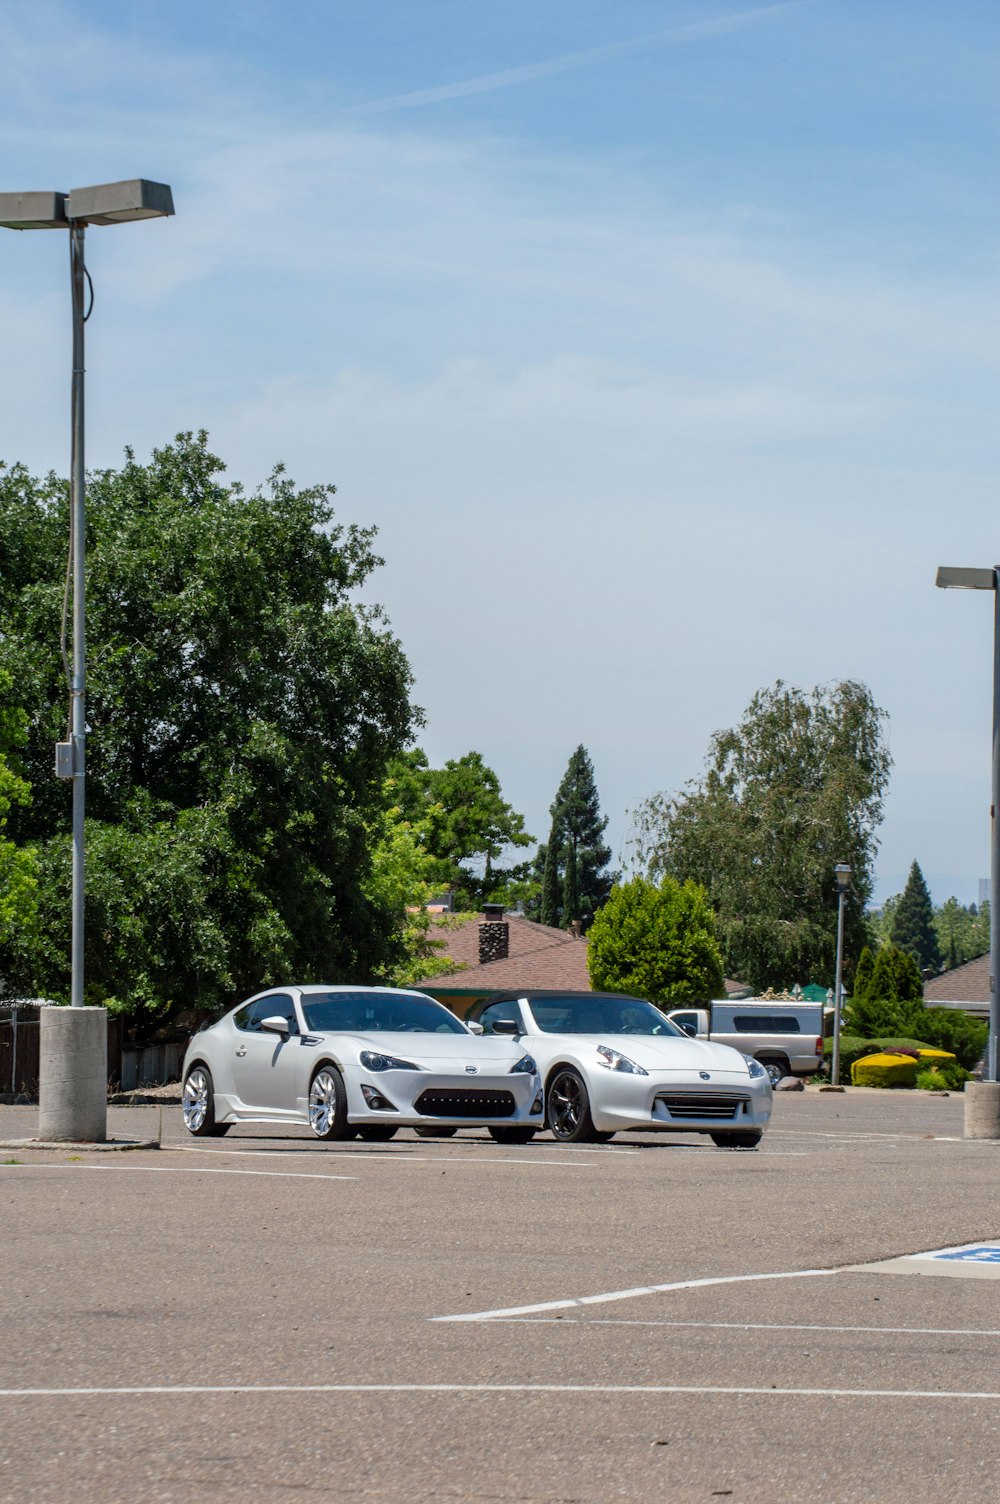 Dos autos deportivos blancos estacionados en un estacionamiento